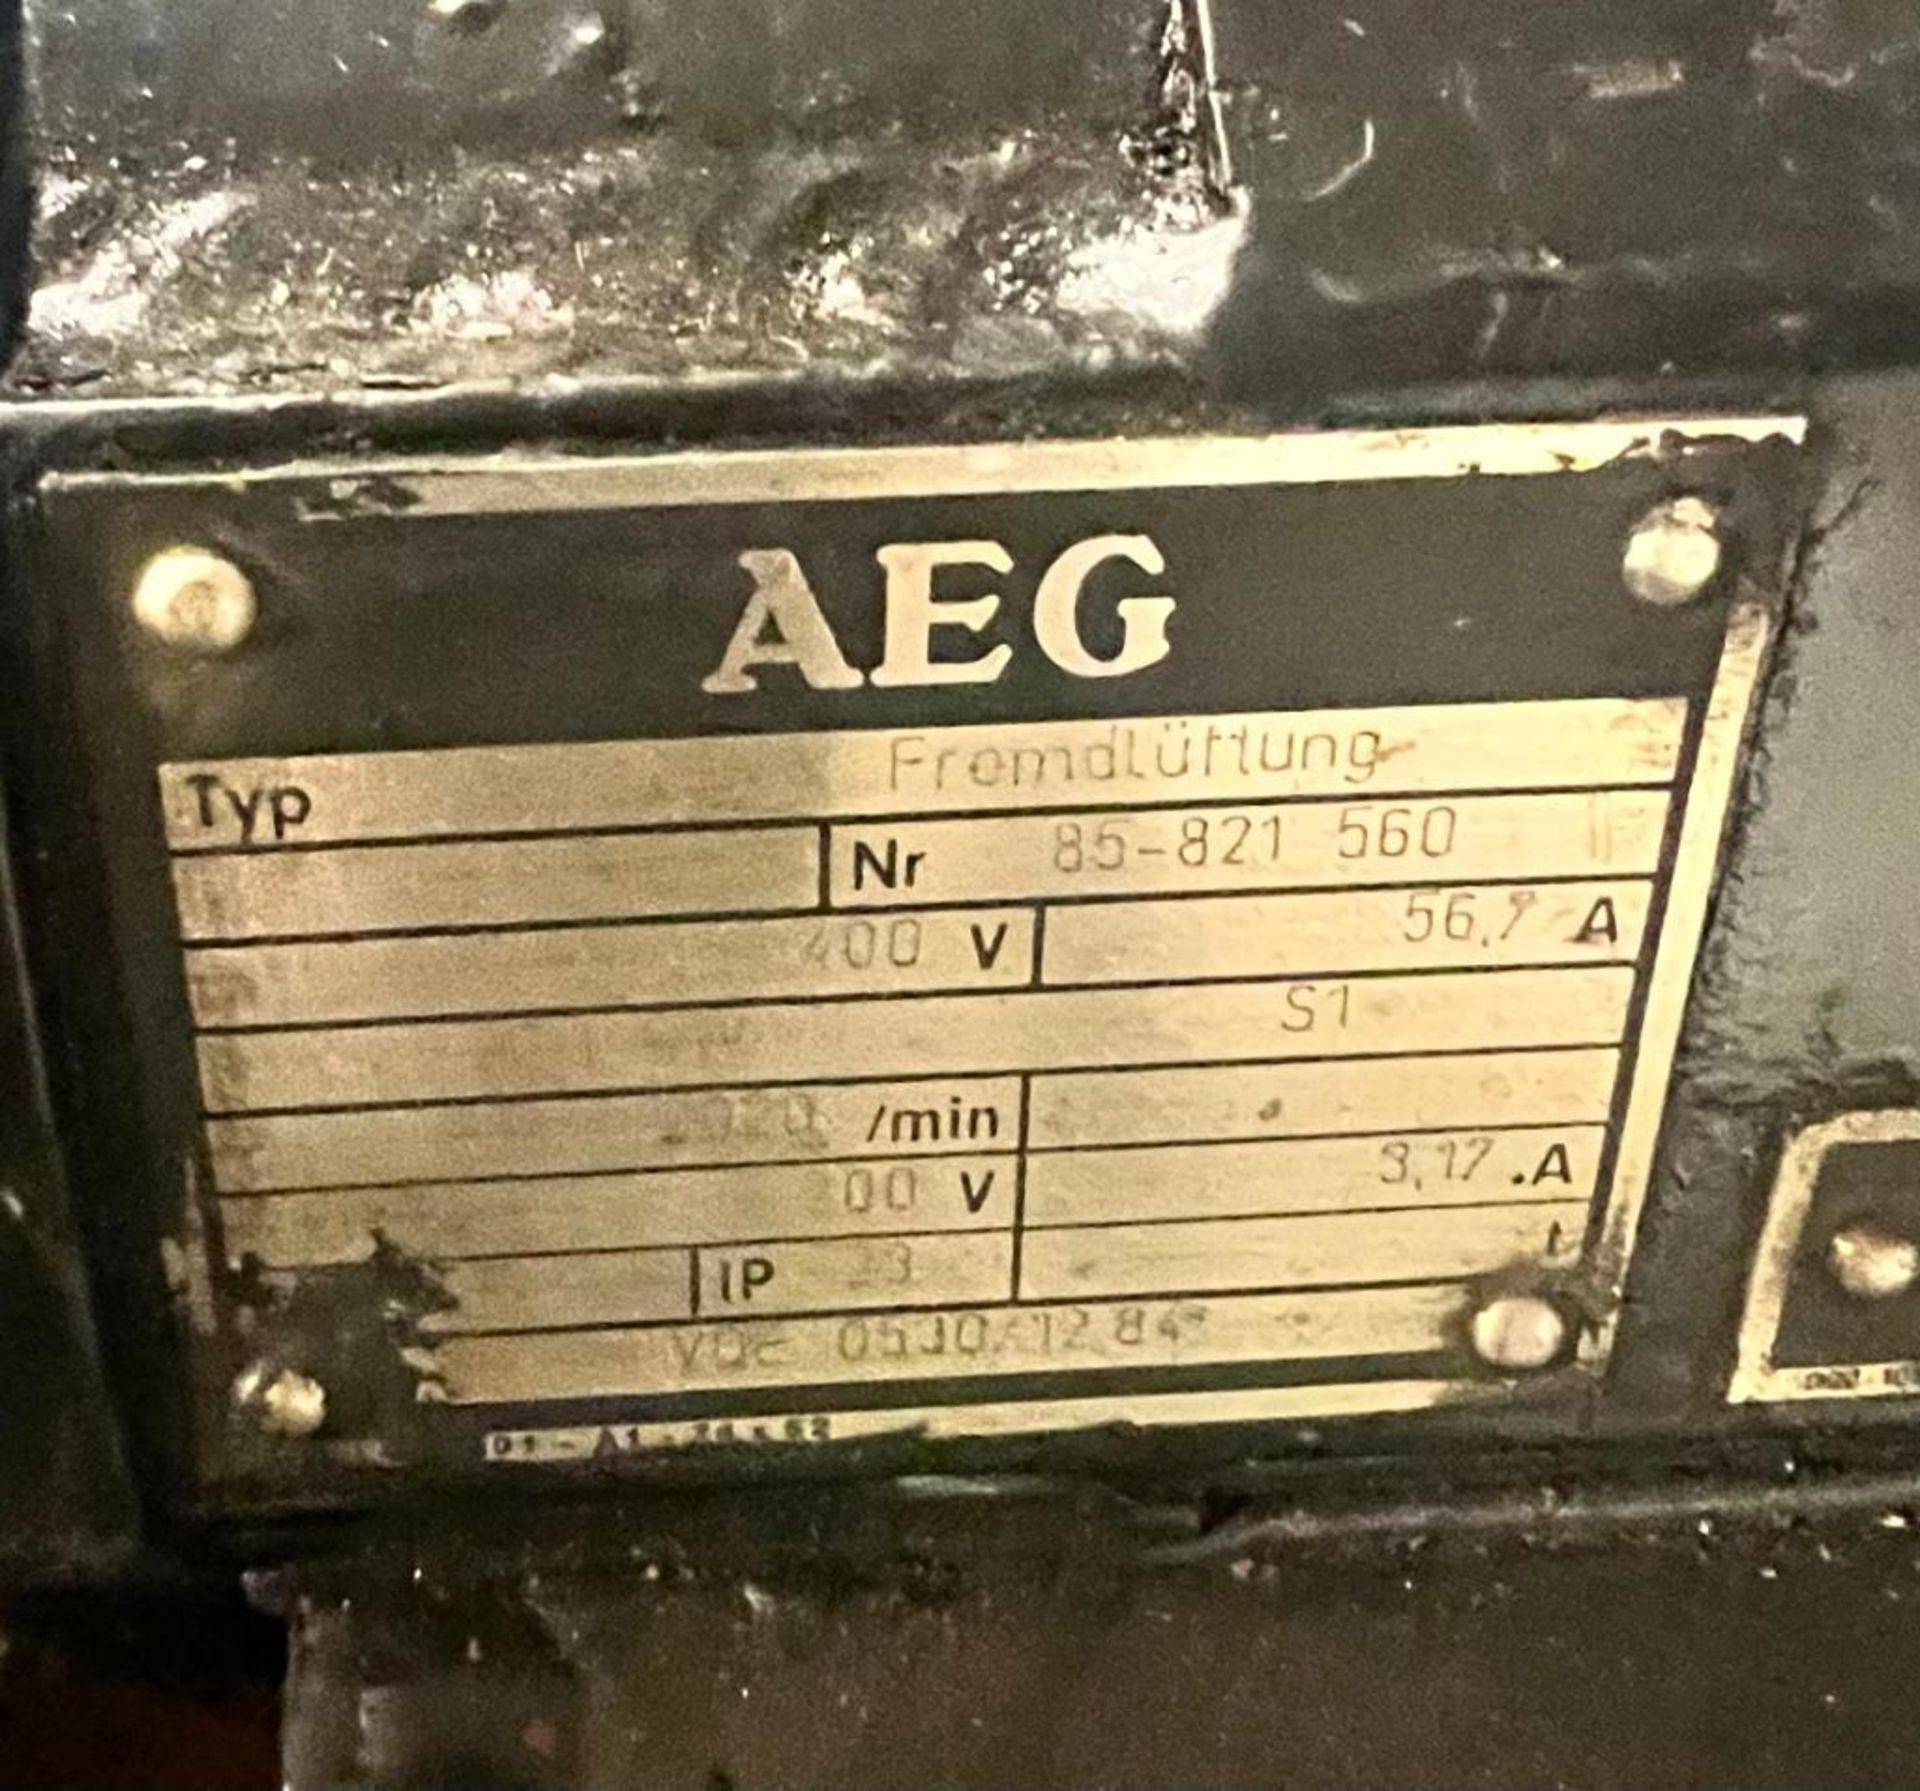 AEG Motor, Type: GF 13.04 - Image 3 of 3